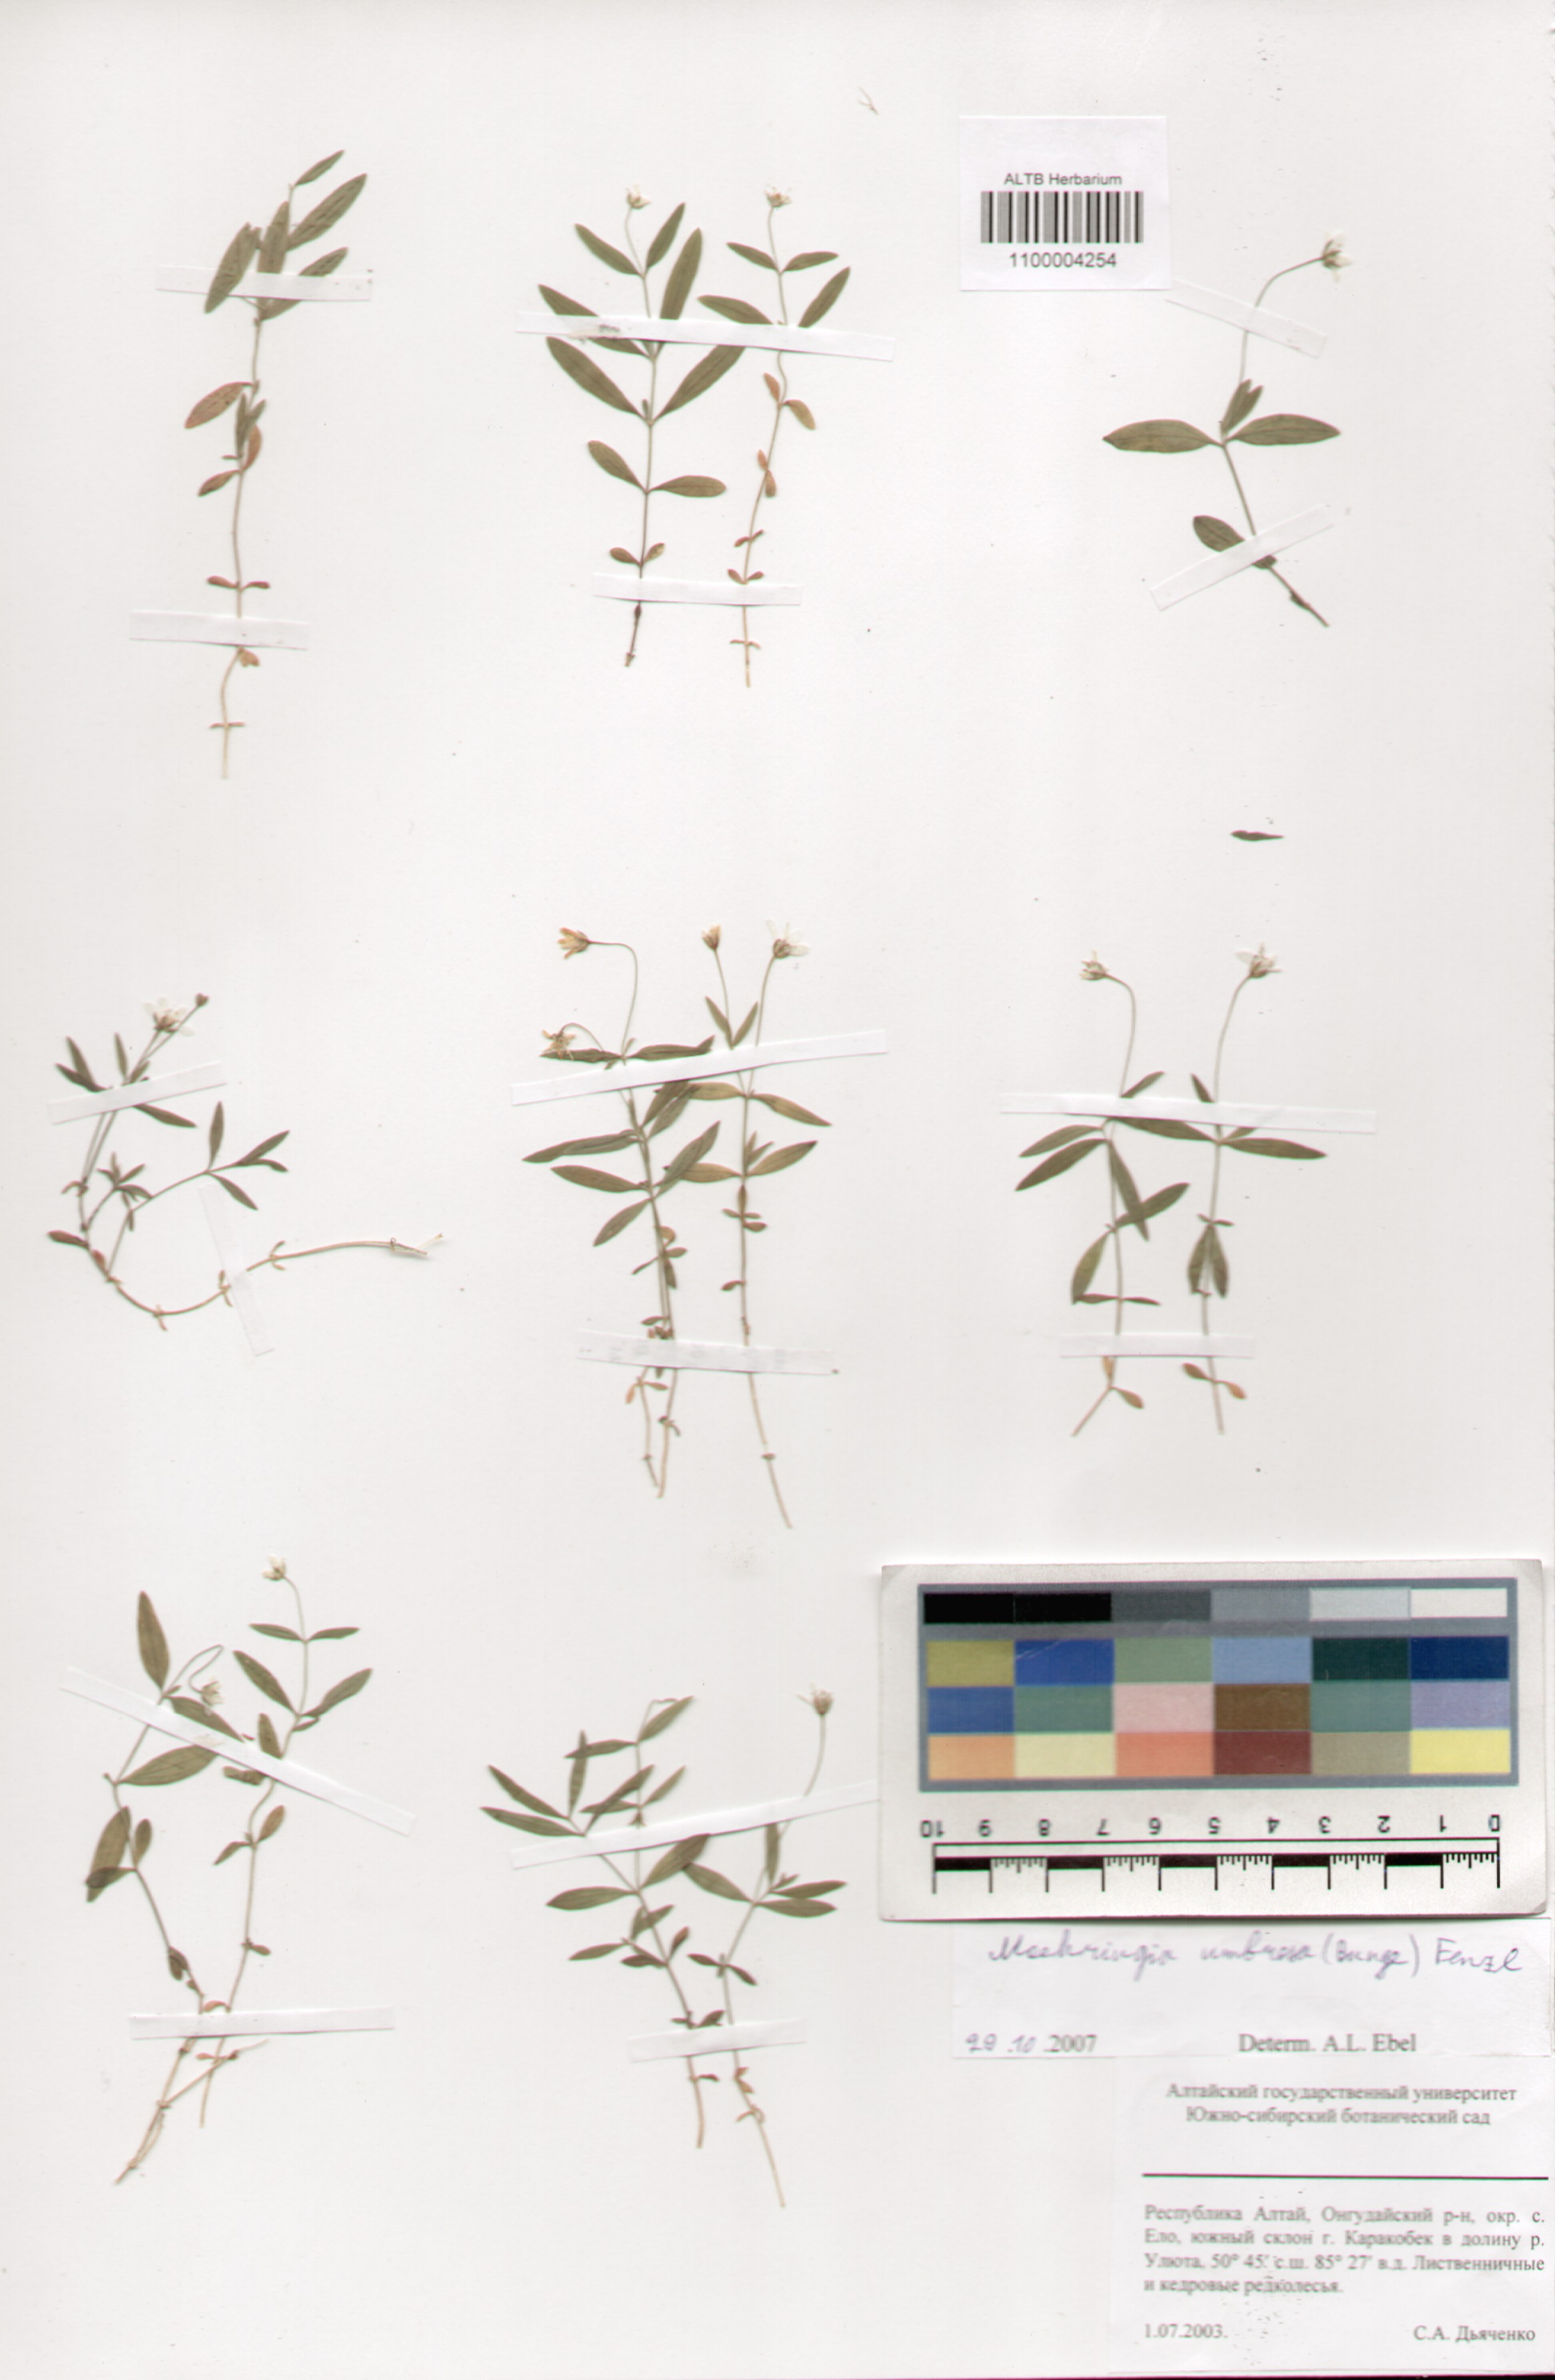 Caryophyllaceae,Moehringia umbrosa (Bunge) Fenzl.